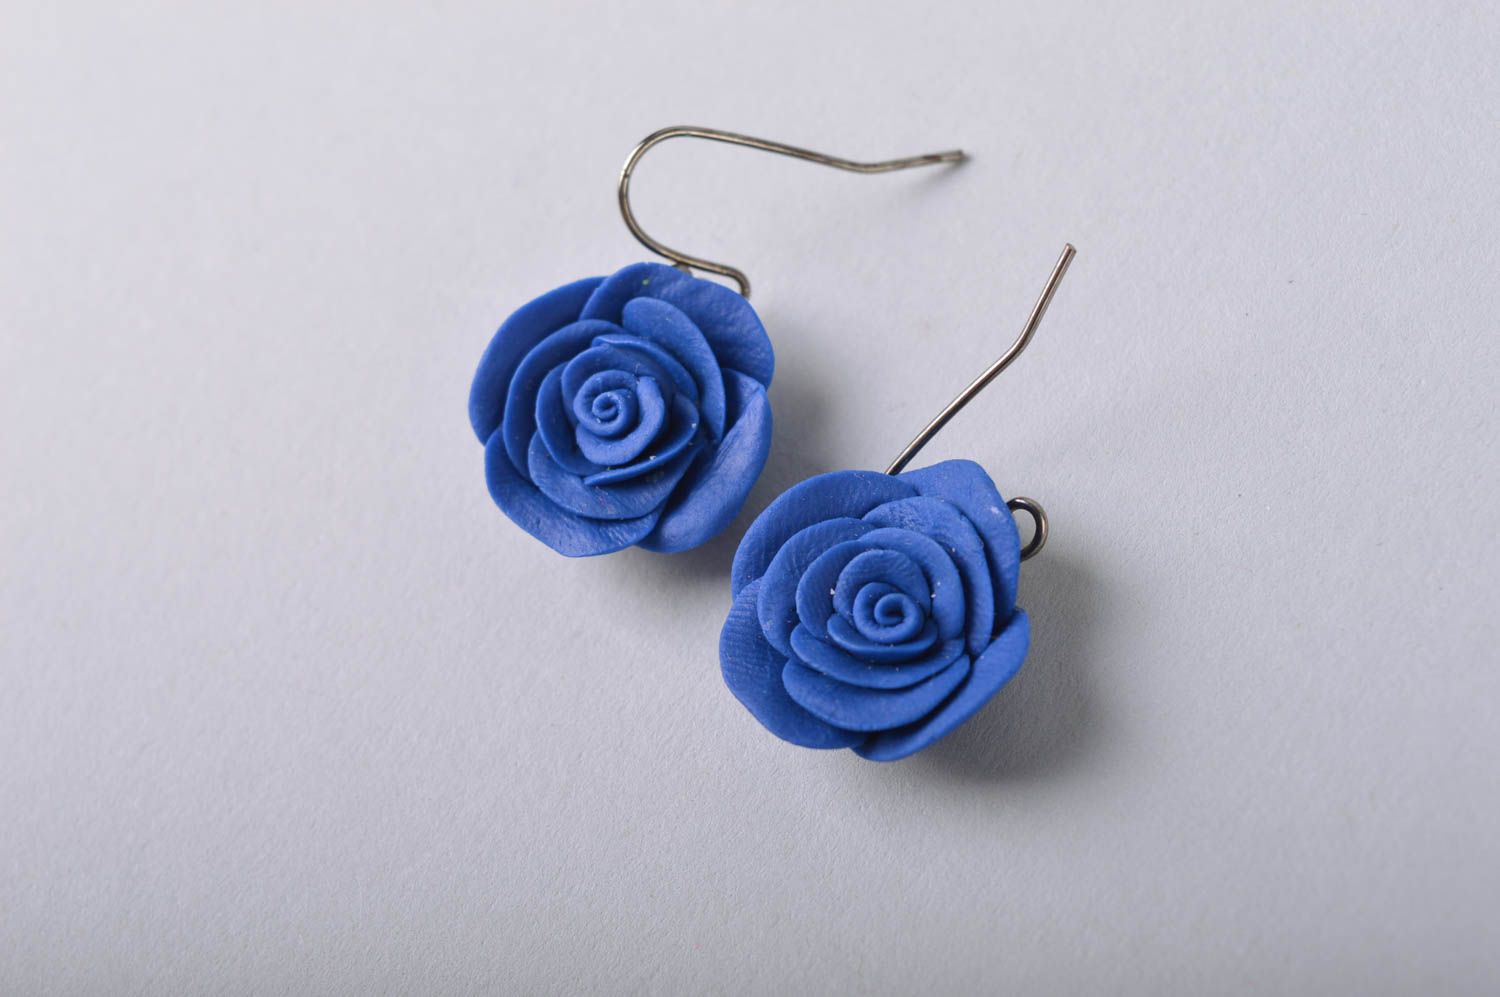 Belles boucles d'oreilles bleues en porcelaine froide faites main Roses photo 3